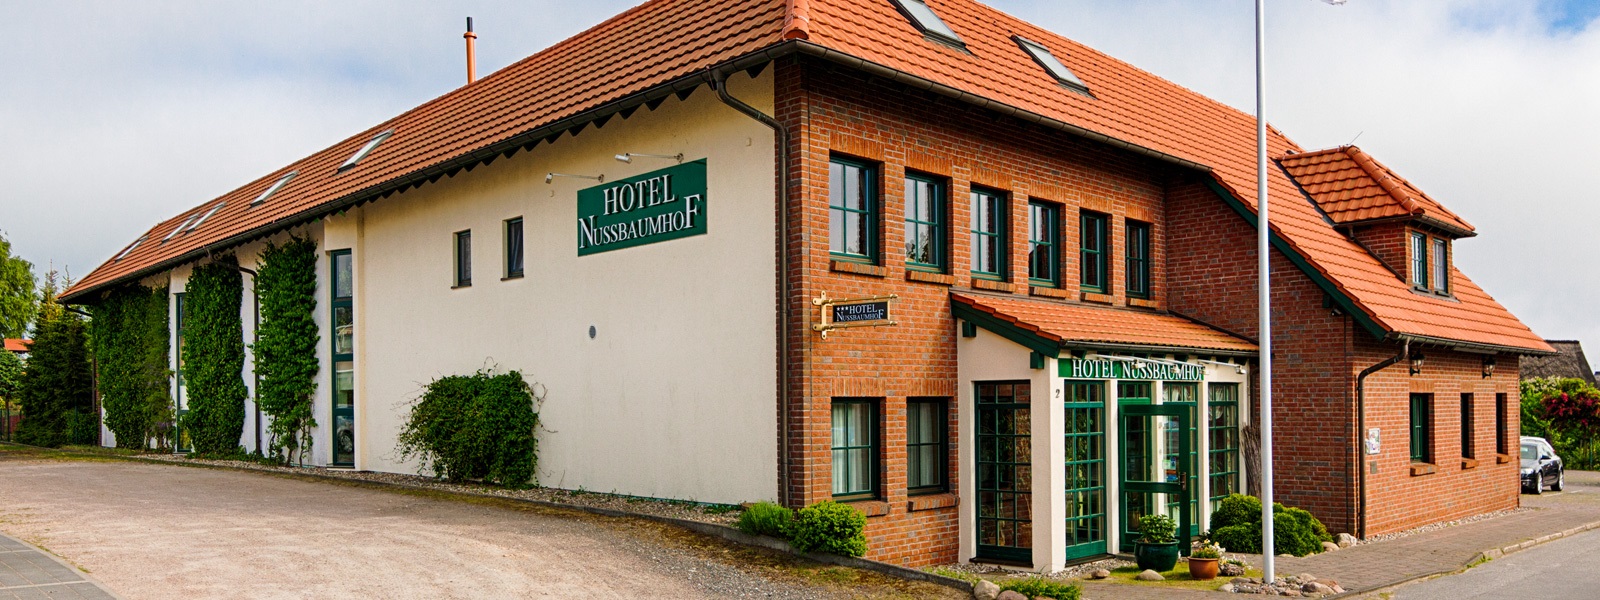 Hotel Nussbaumhof Seebad Ückeritz